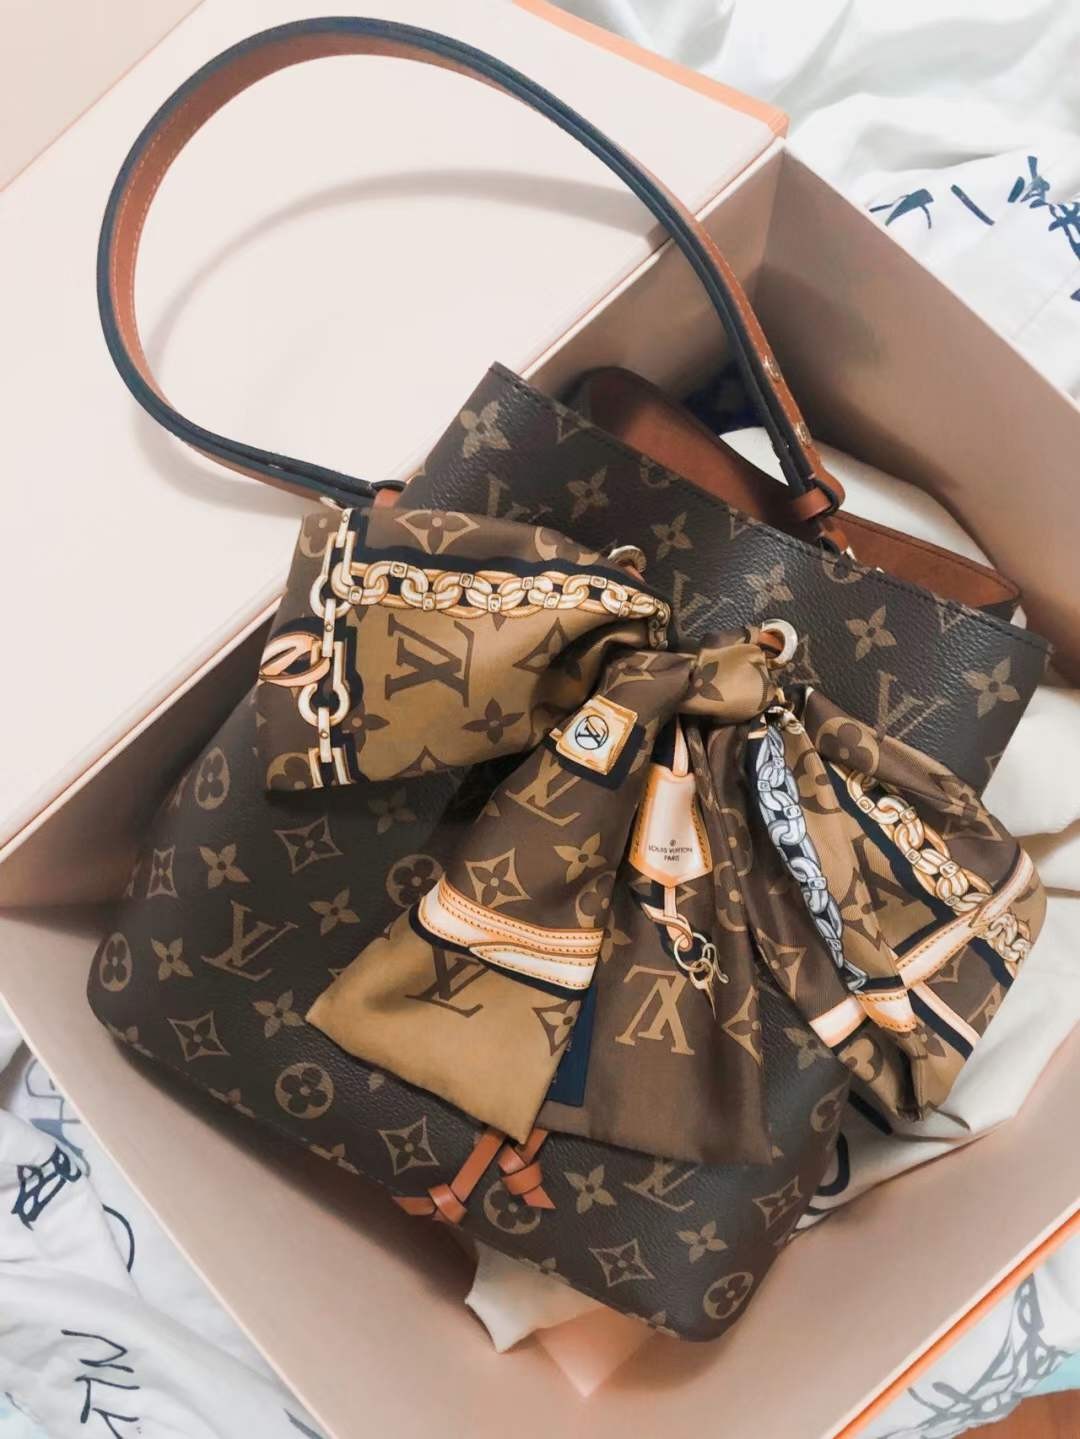 Louis Vuitton M44887 NÉONOÉ Top Replica Handbag Carrying Effect (2022 Latest)-Best Quality Fake designer Bag Review, Replica designer bag ru